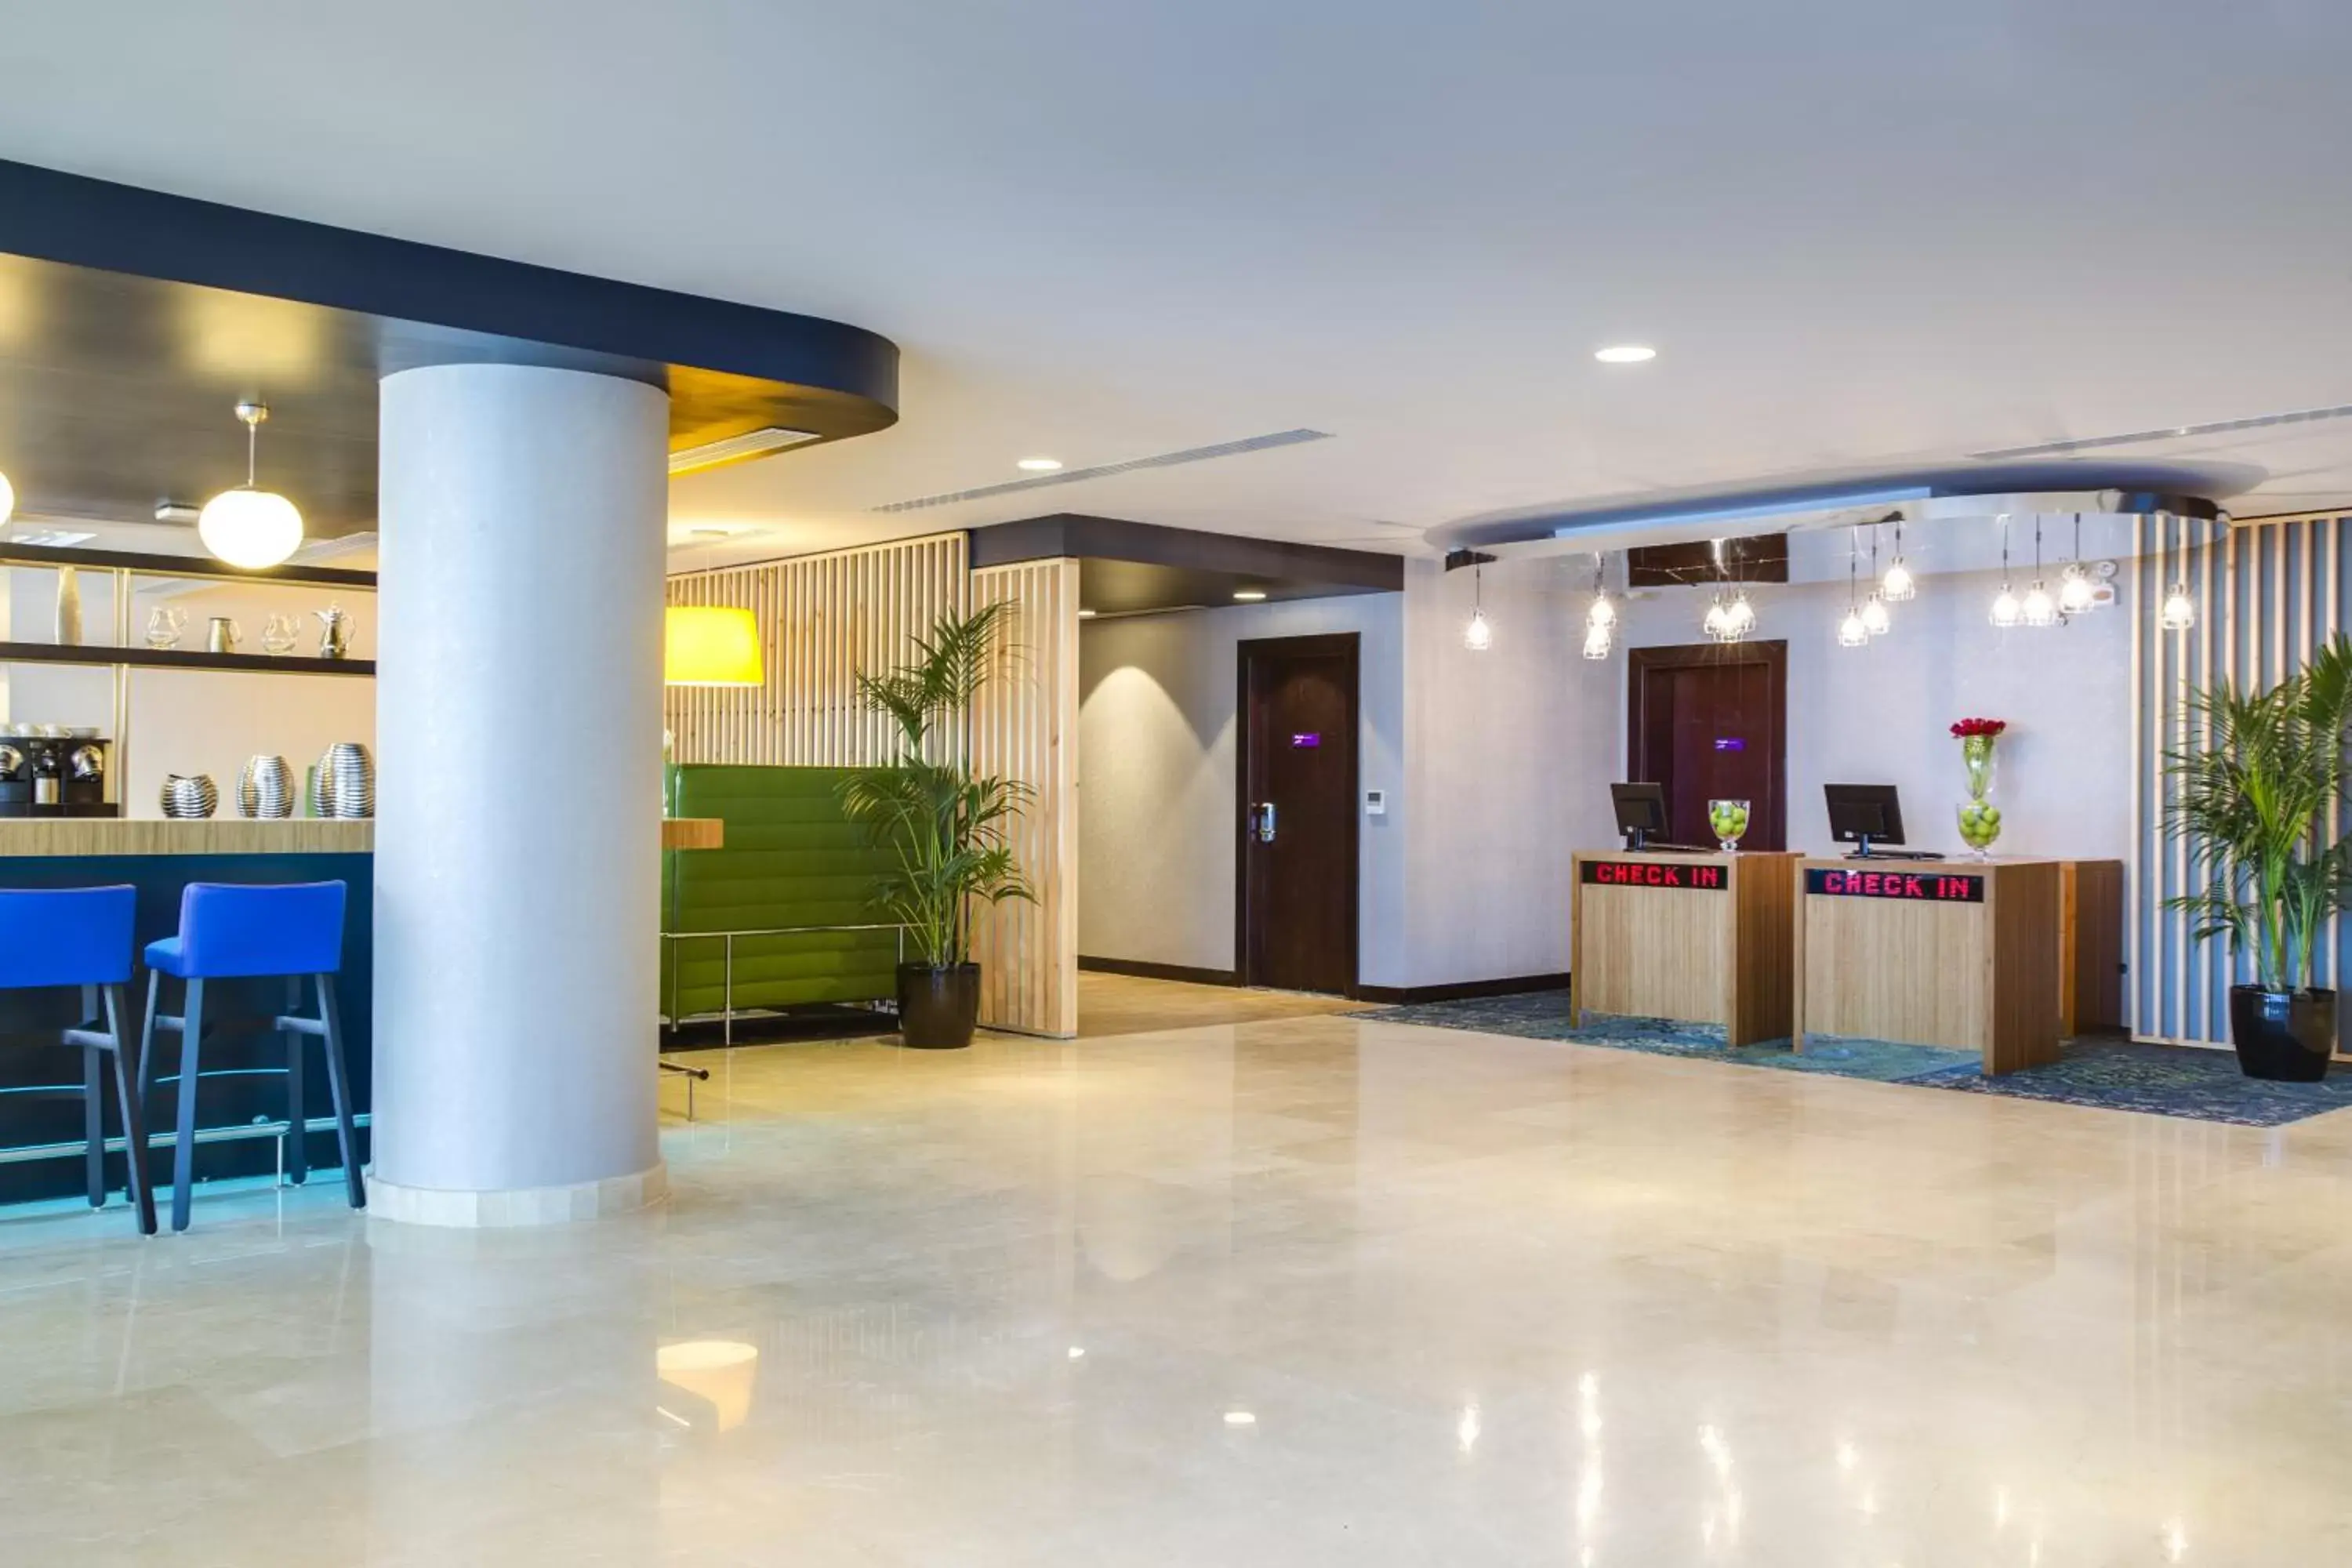 Lobby or reception, Lobby/Reception in Park Inn by Radisson Dammam